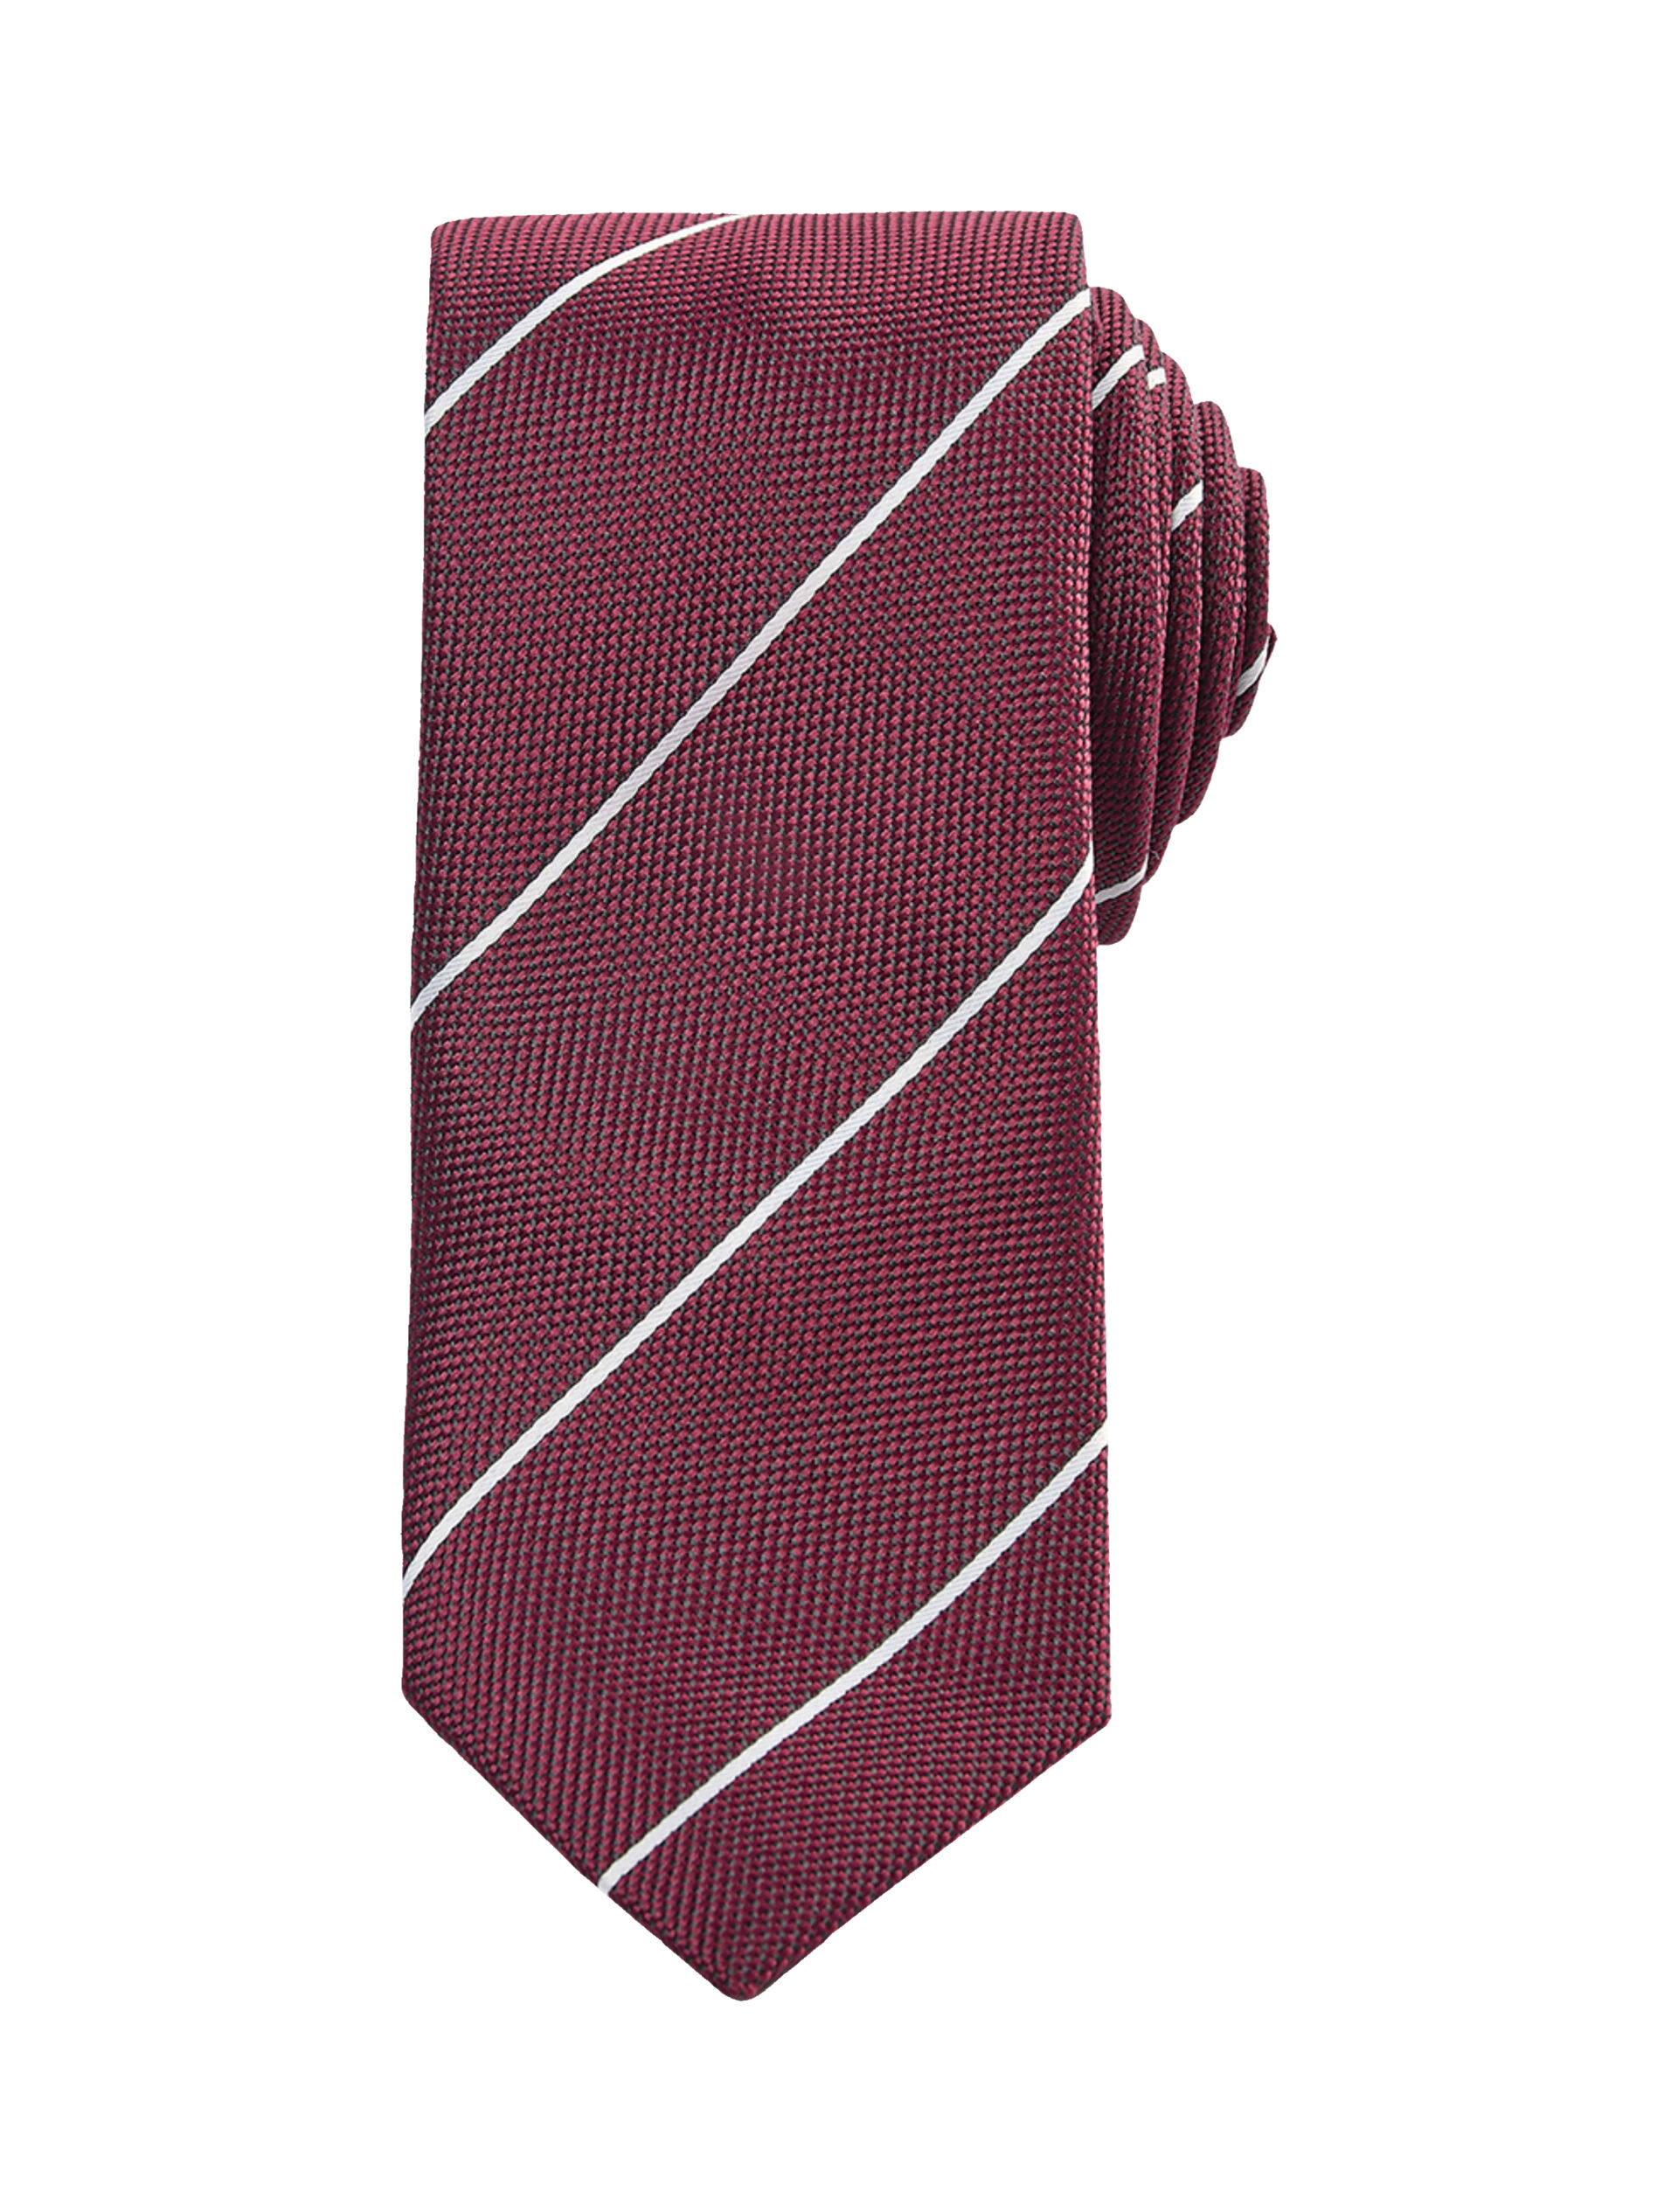 Rødt slips med hvide striber